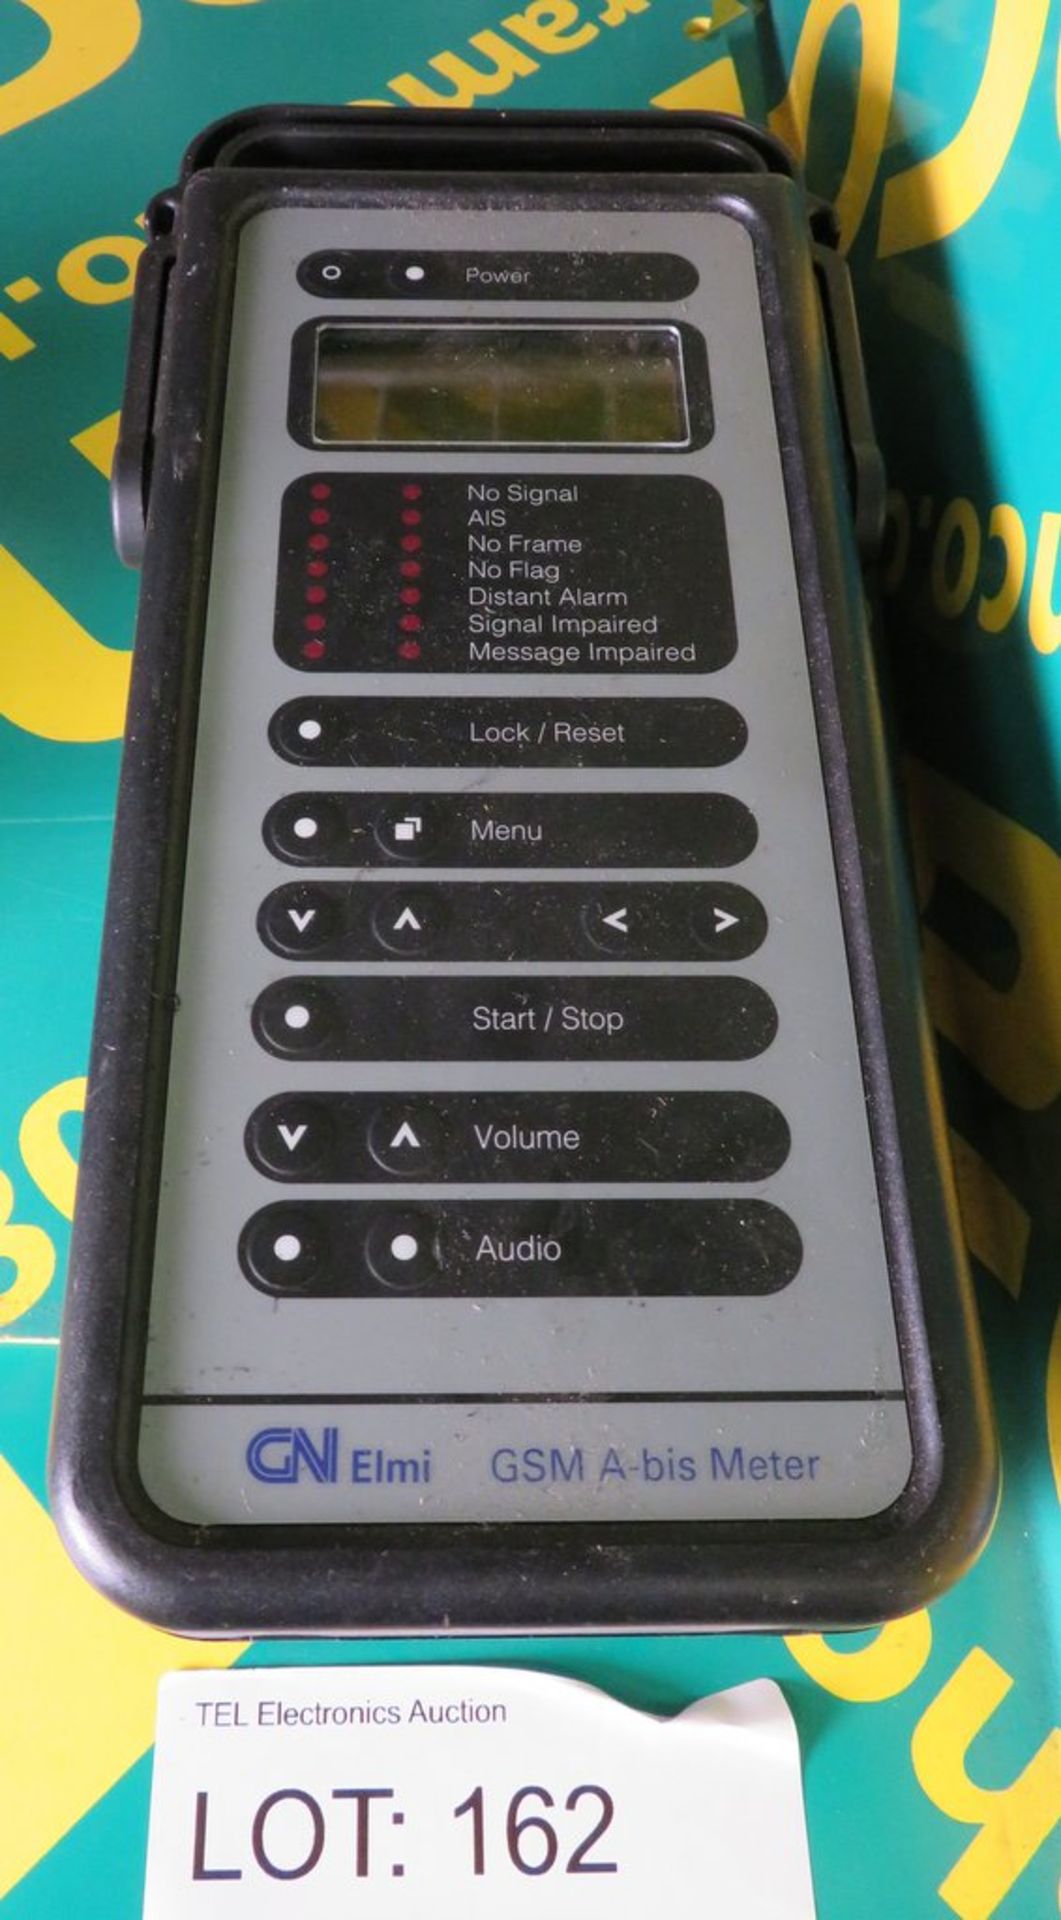 GN Elmi GSM A-bis Meter